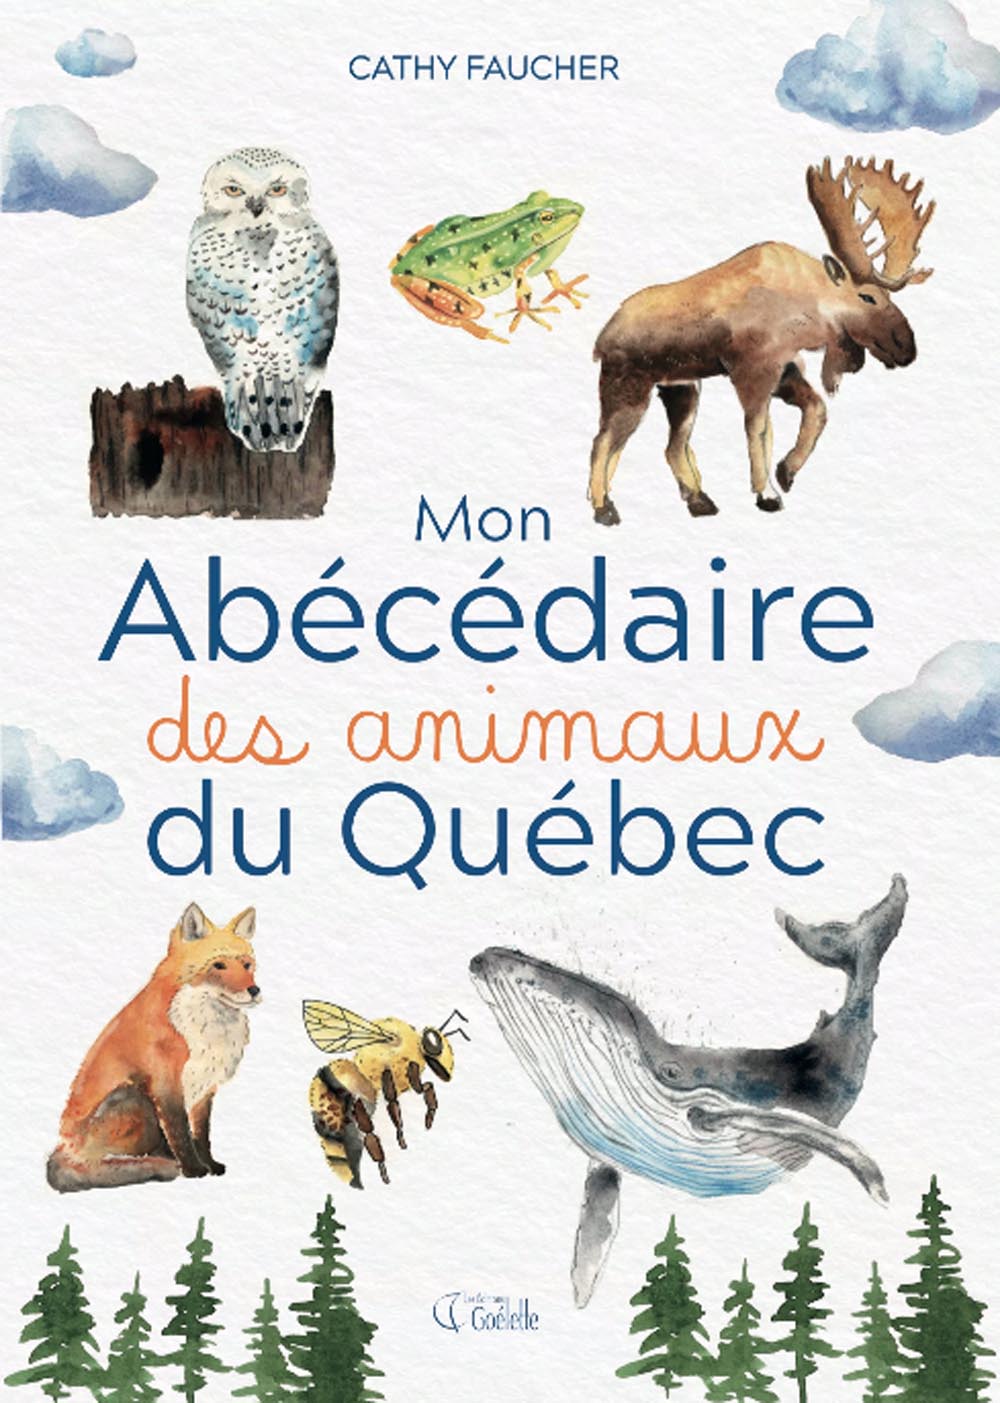 Mon abécédaire des animaux du Québec écrit par Cathy Faucher